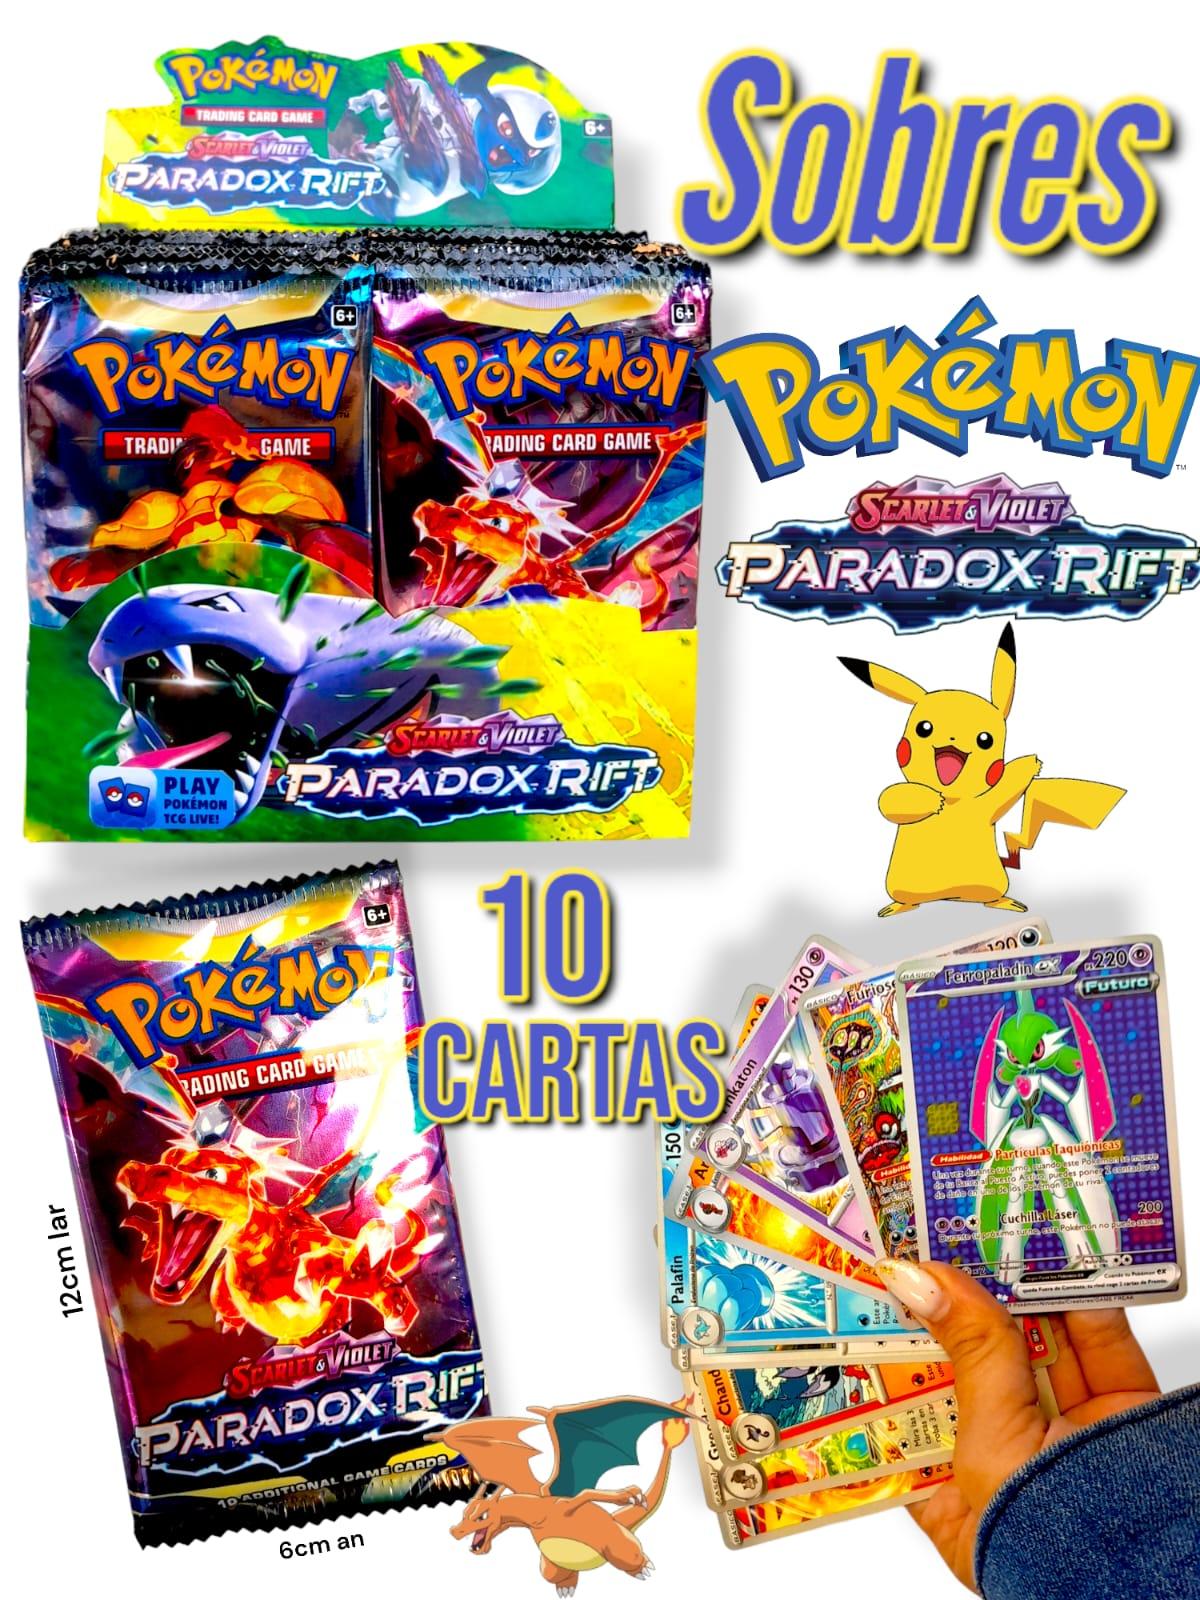 Sobres Pokemon Scarlet y Violet Paradox Rift con caja exhibidora